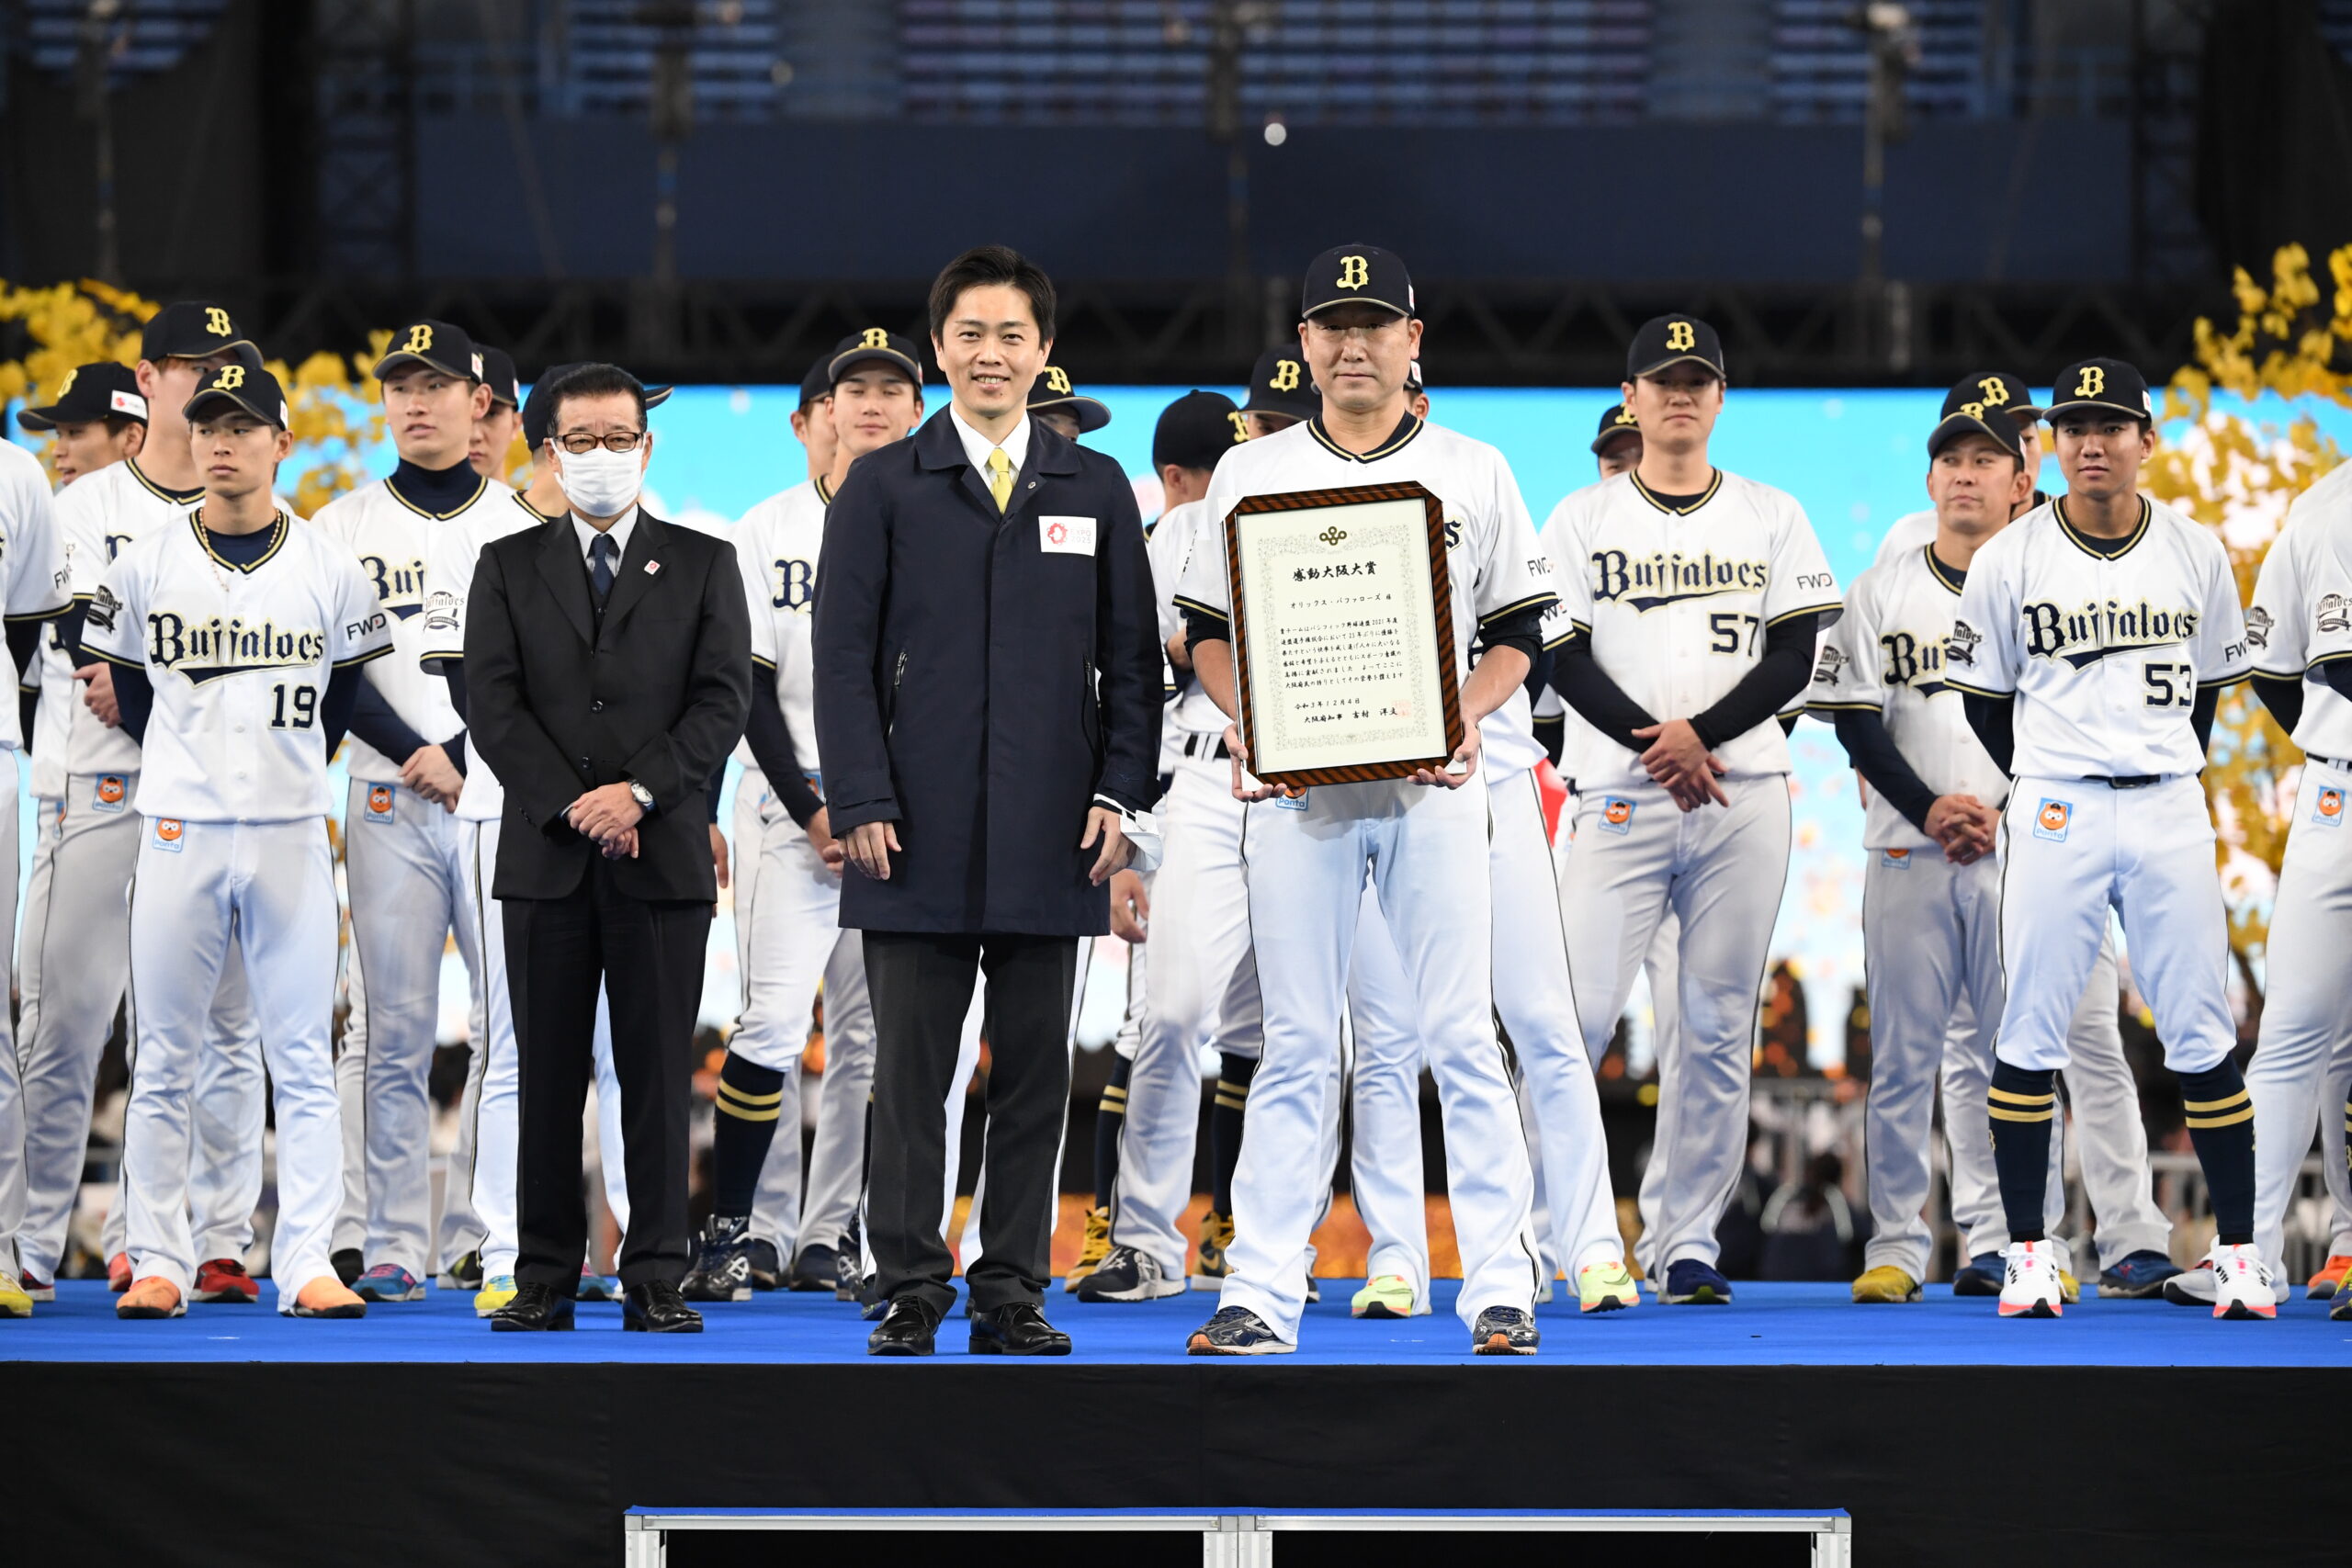 太平洋职业棒球联盟冠军歐力士野牛 获得了令人印象深刻的大阪大奖！